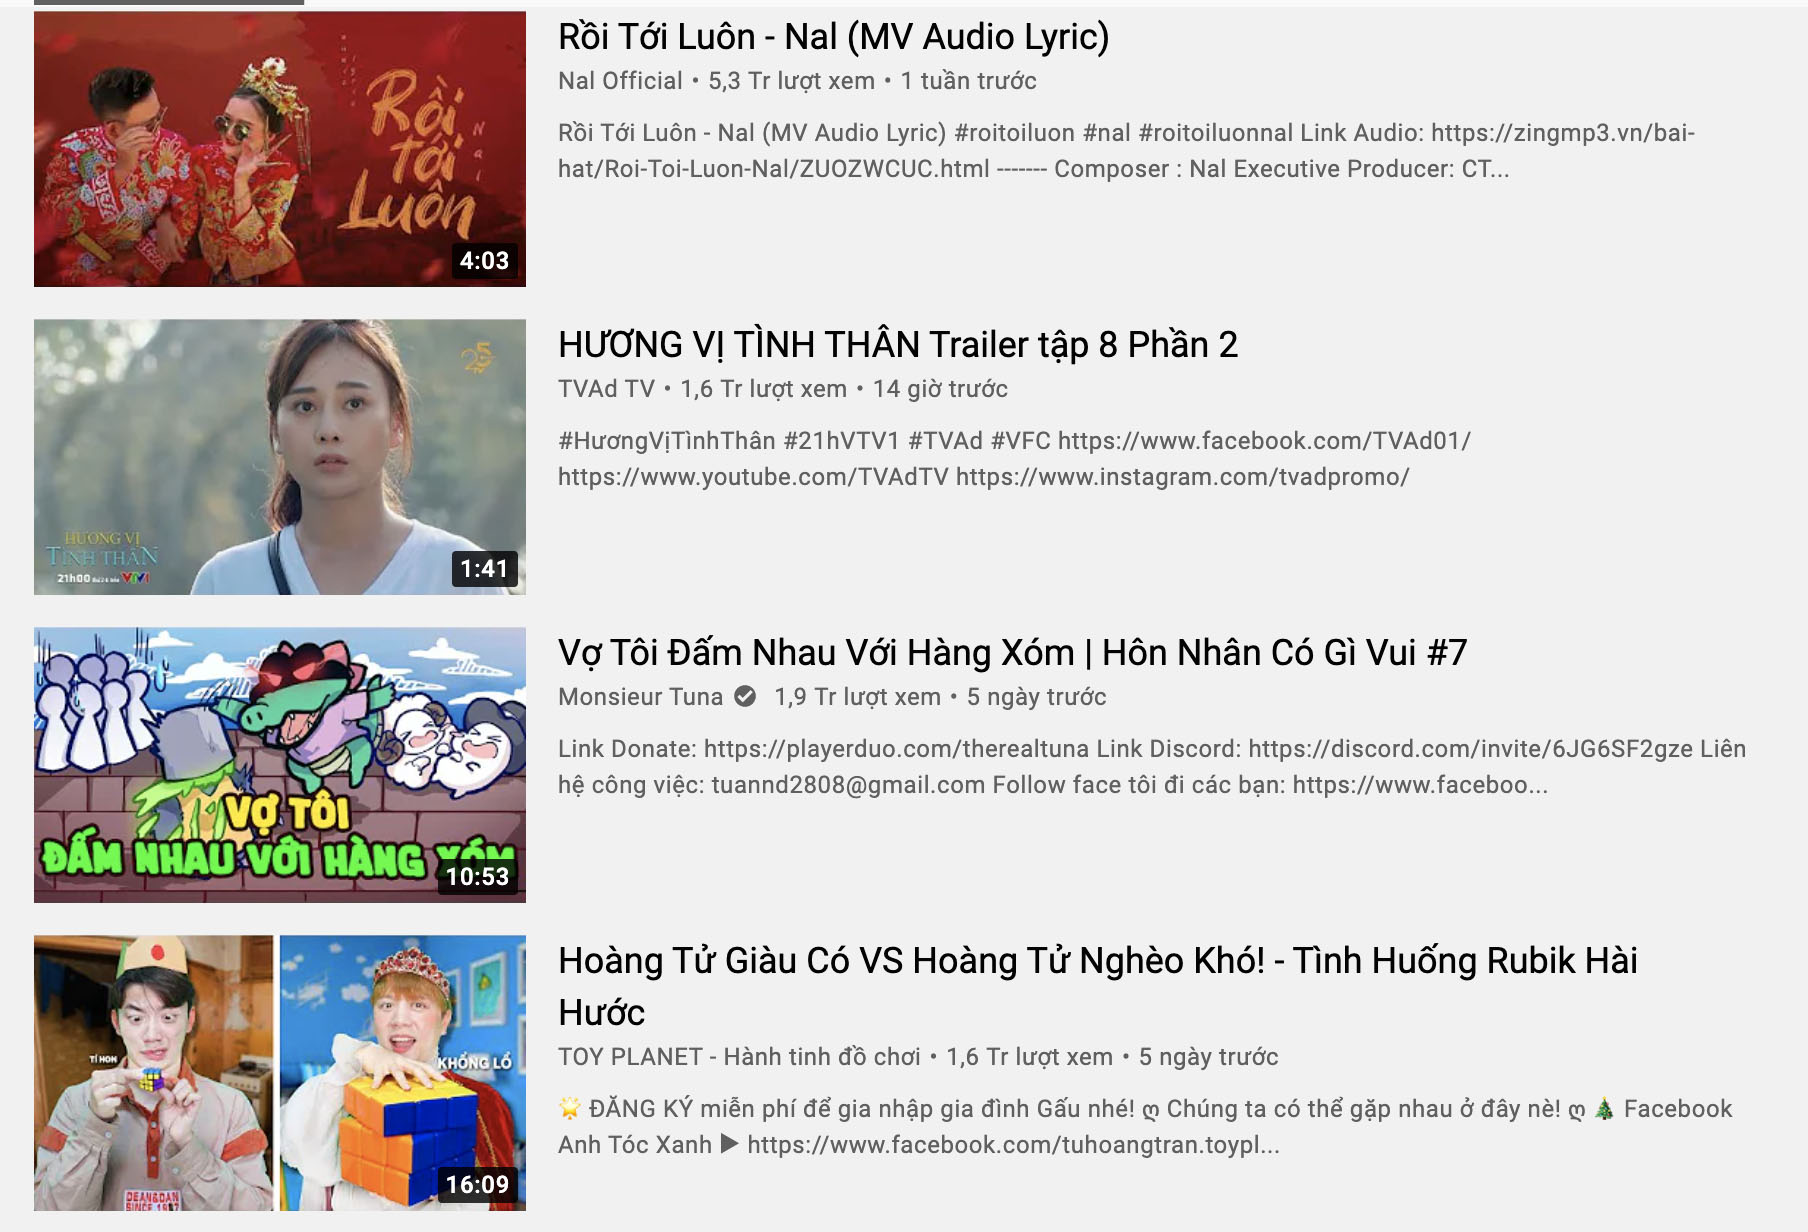 Công bố những nội dung đang “hot” trên YouTube Việt Nam - 2